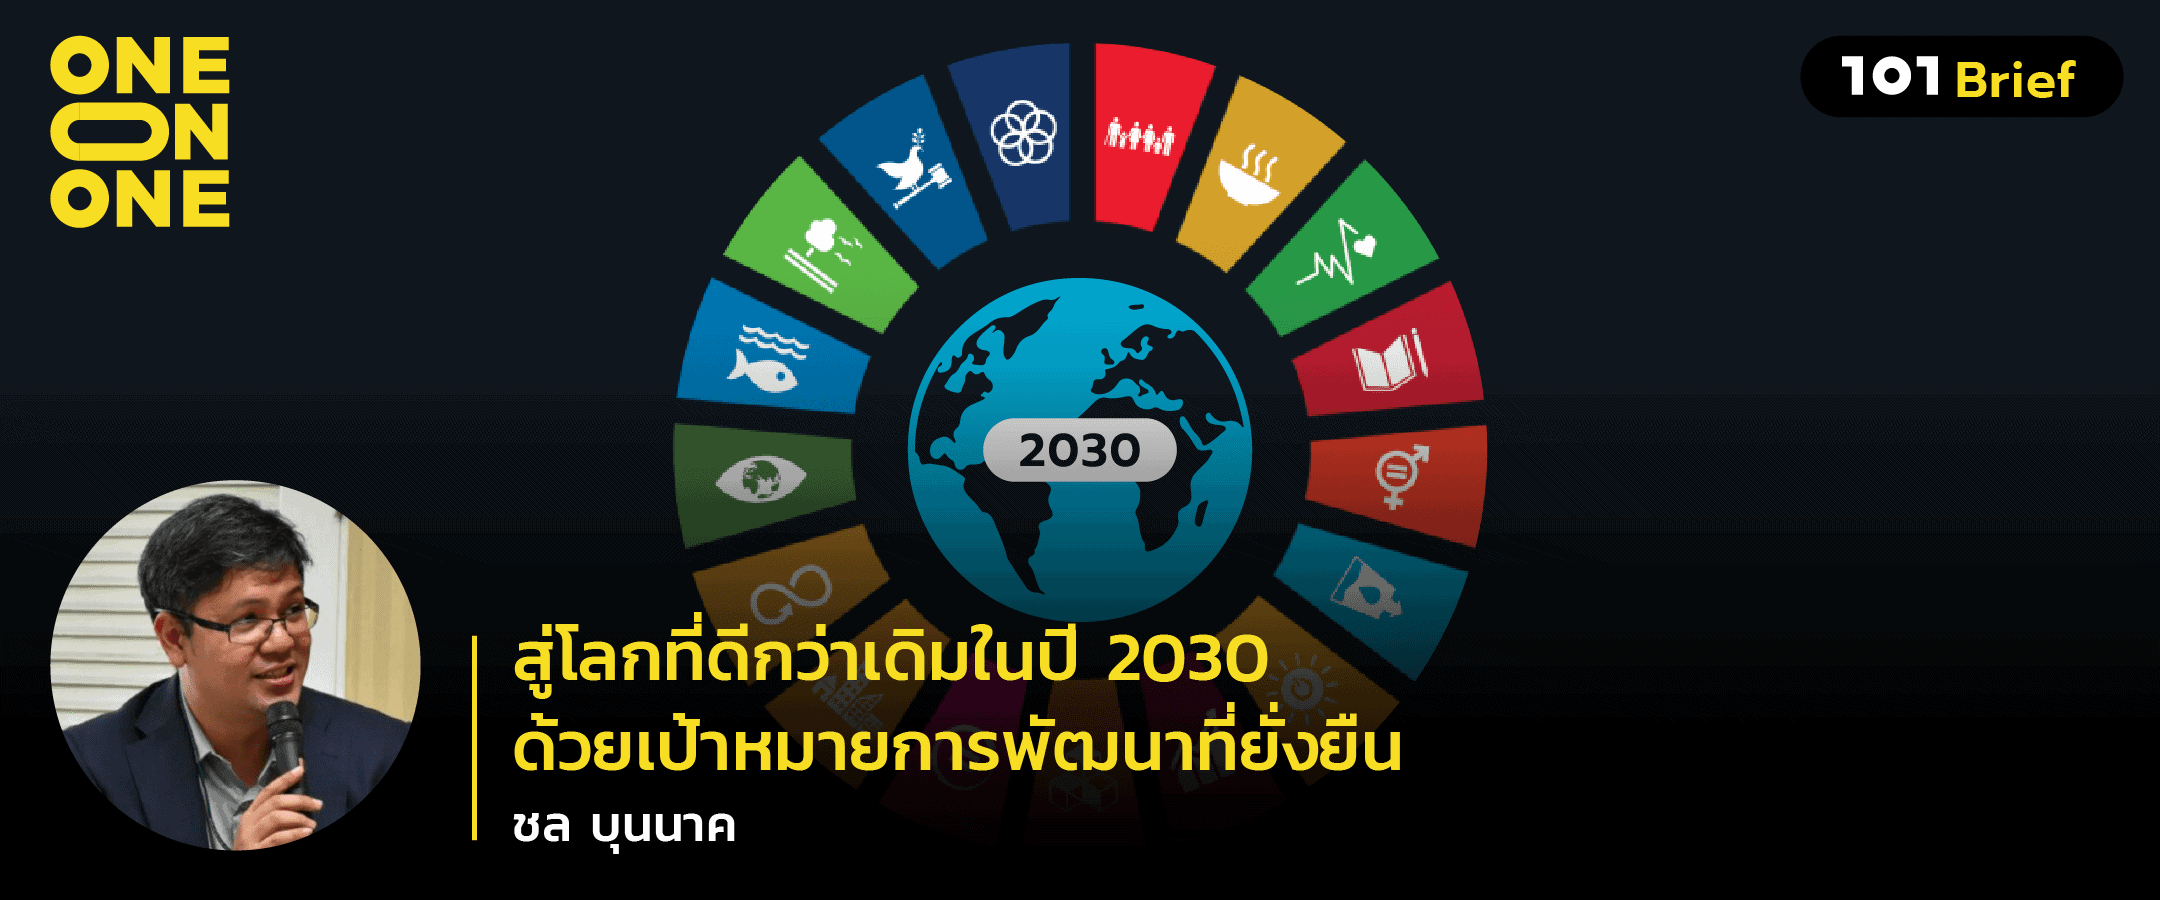 สู่โลกที่ดีกว่าเดิมในปี 2030 ด้วยเป้าหมายการพัฒนาที่ยั่งยืน (SDGs) กับ ชล บุนนาค